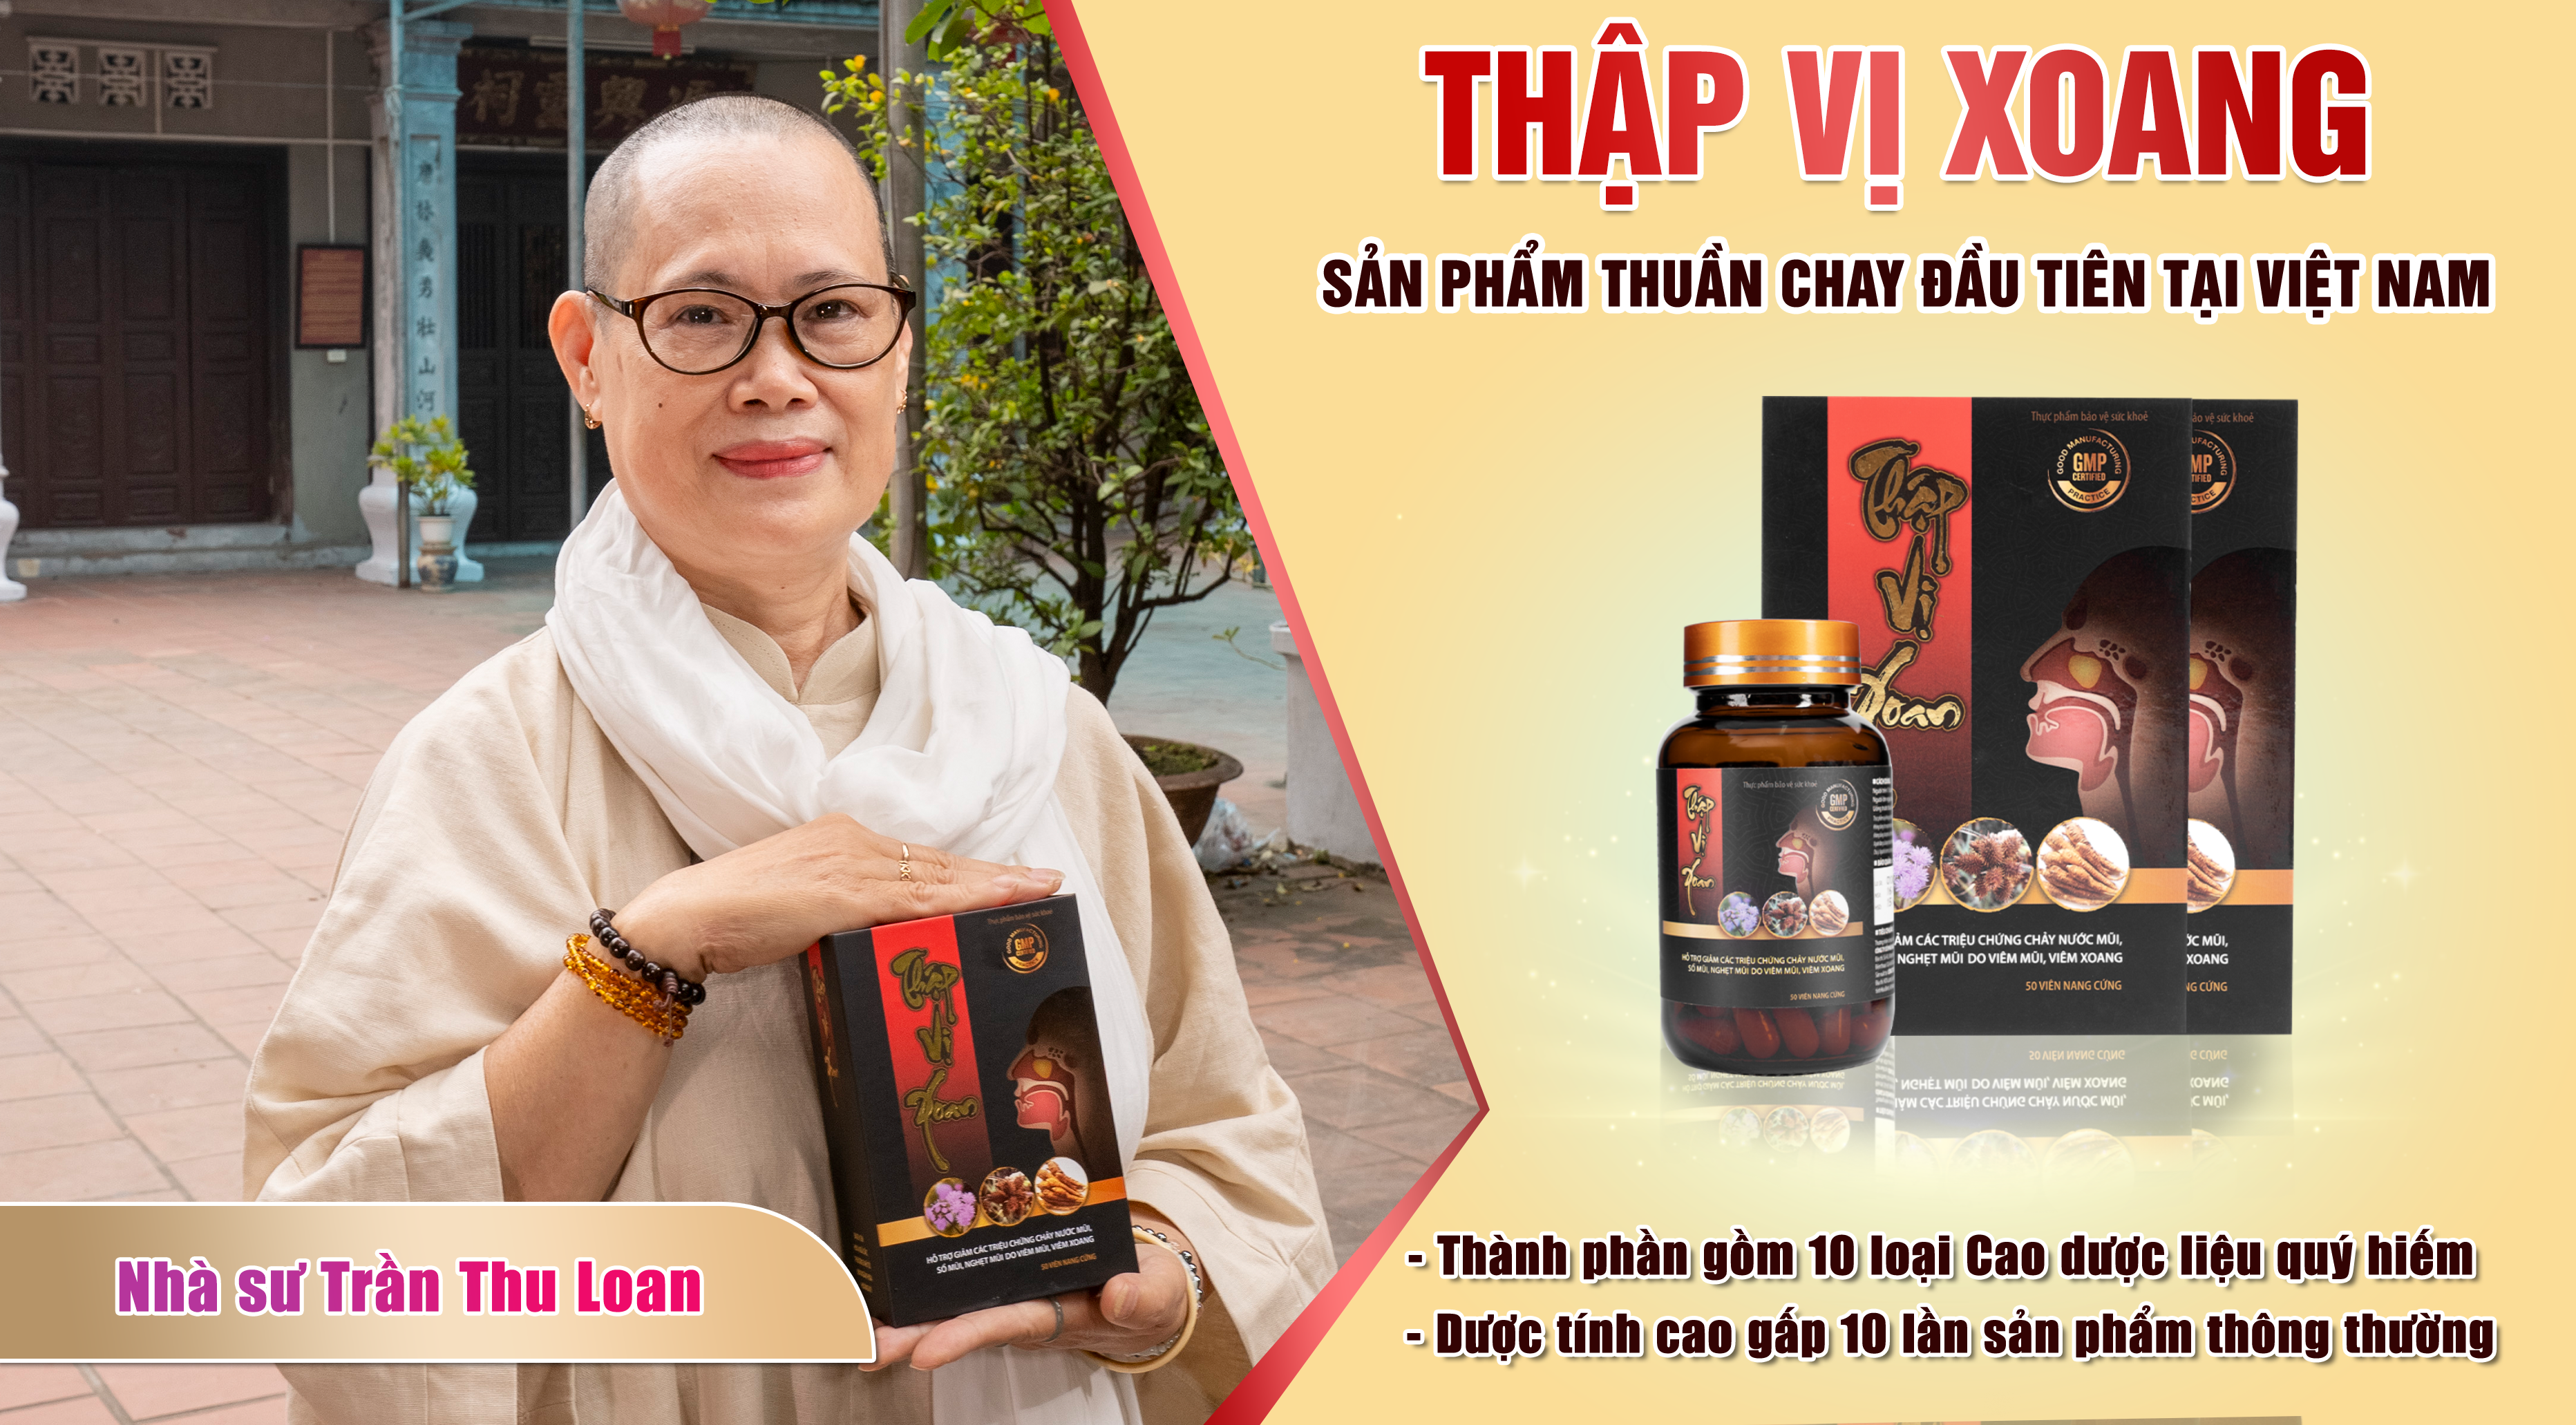 Nhà sư: Trần Thu Loan - Hà Nội